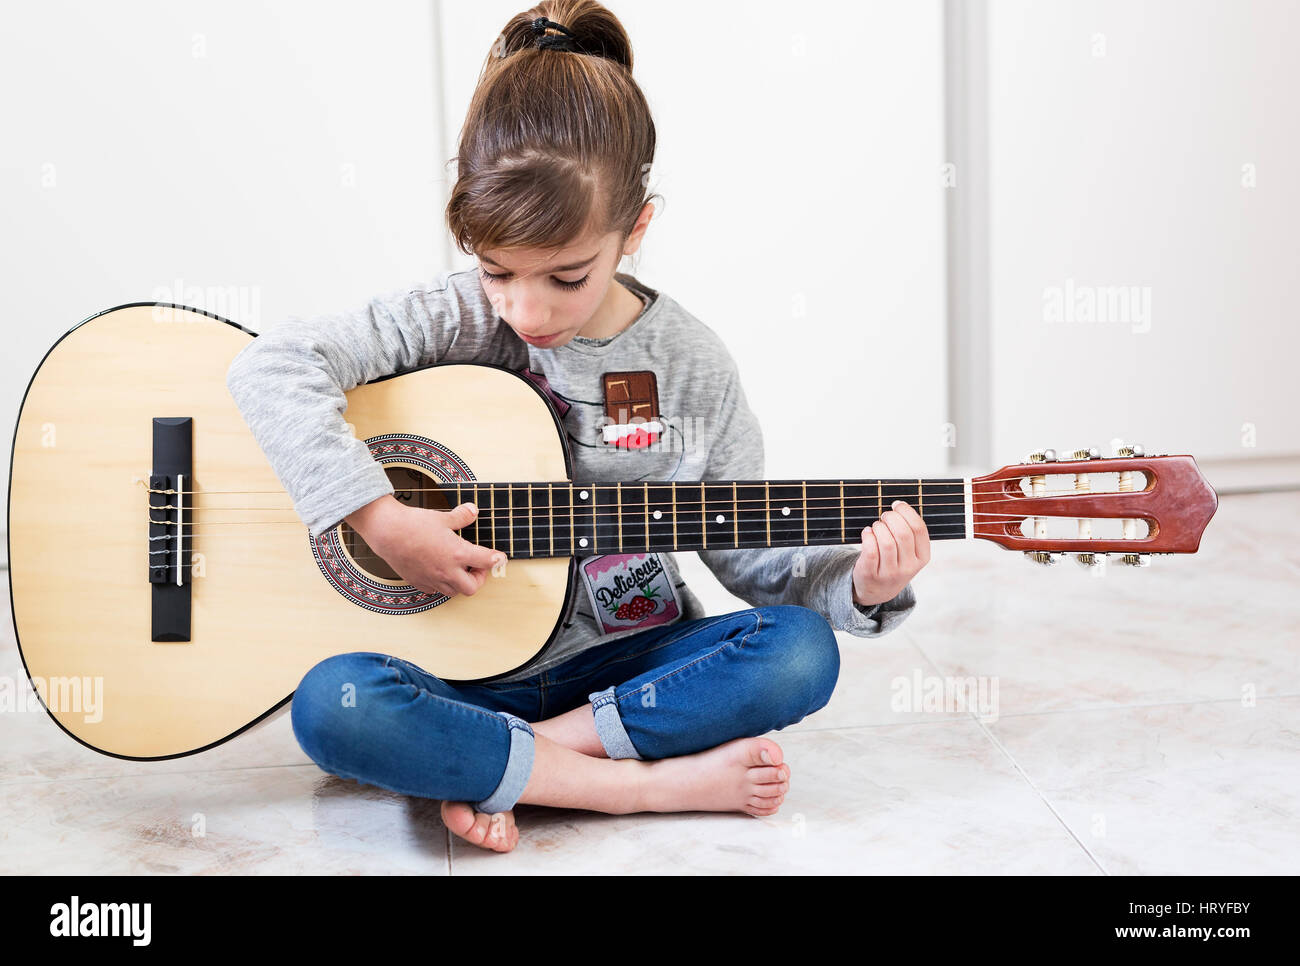 9 Jahre altes Mädchen lernen, Gitarre zu spielen. Horizontal mit Lichteinfall durch ein Fenster geschossen. Stockfoto